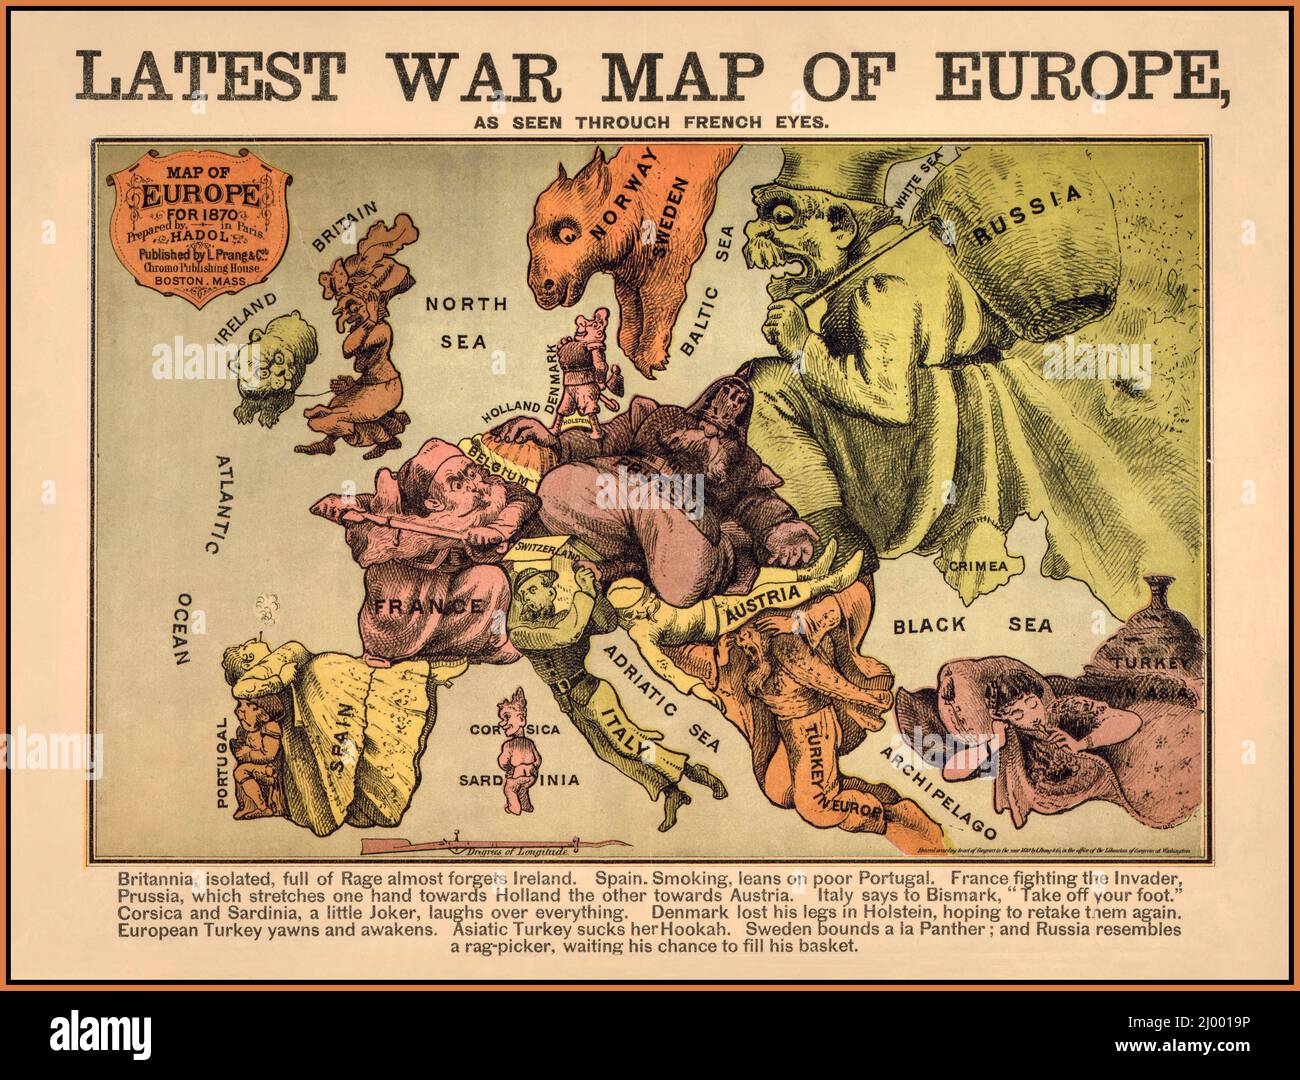 El 'Mapa de la última guerra de Europa' de la vendimia de 1870 visto a través de los ojos franceses. Publicado en Boston Massachusetts USA Foto de stock